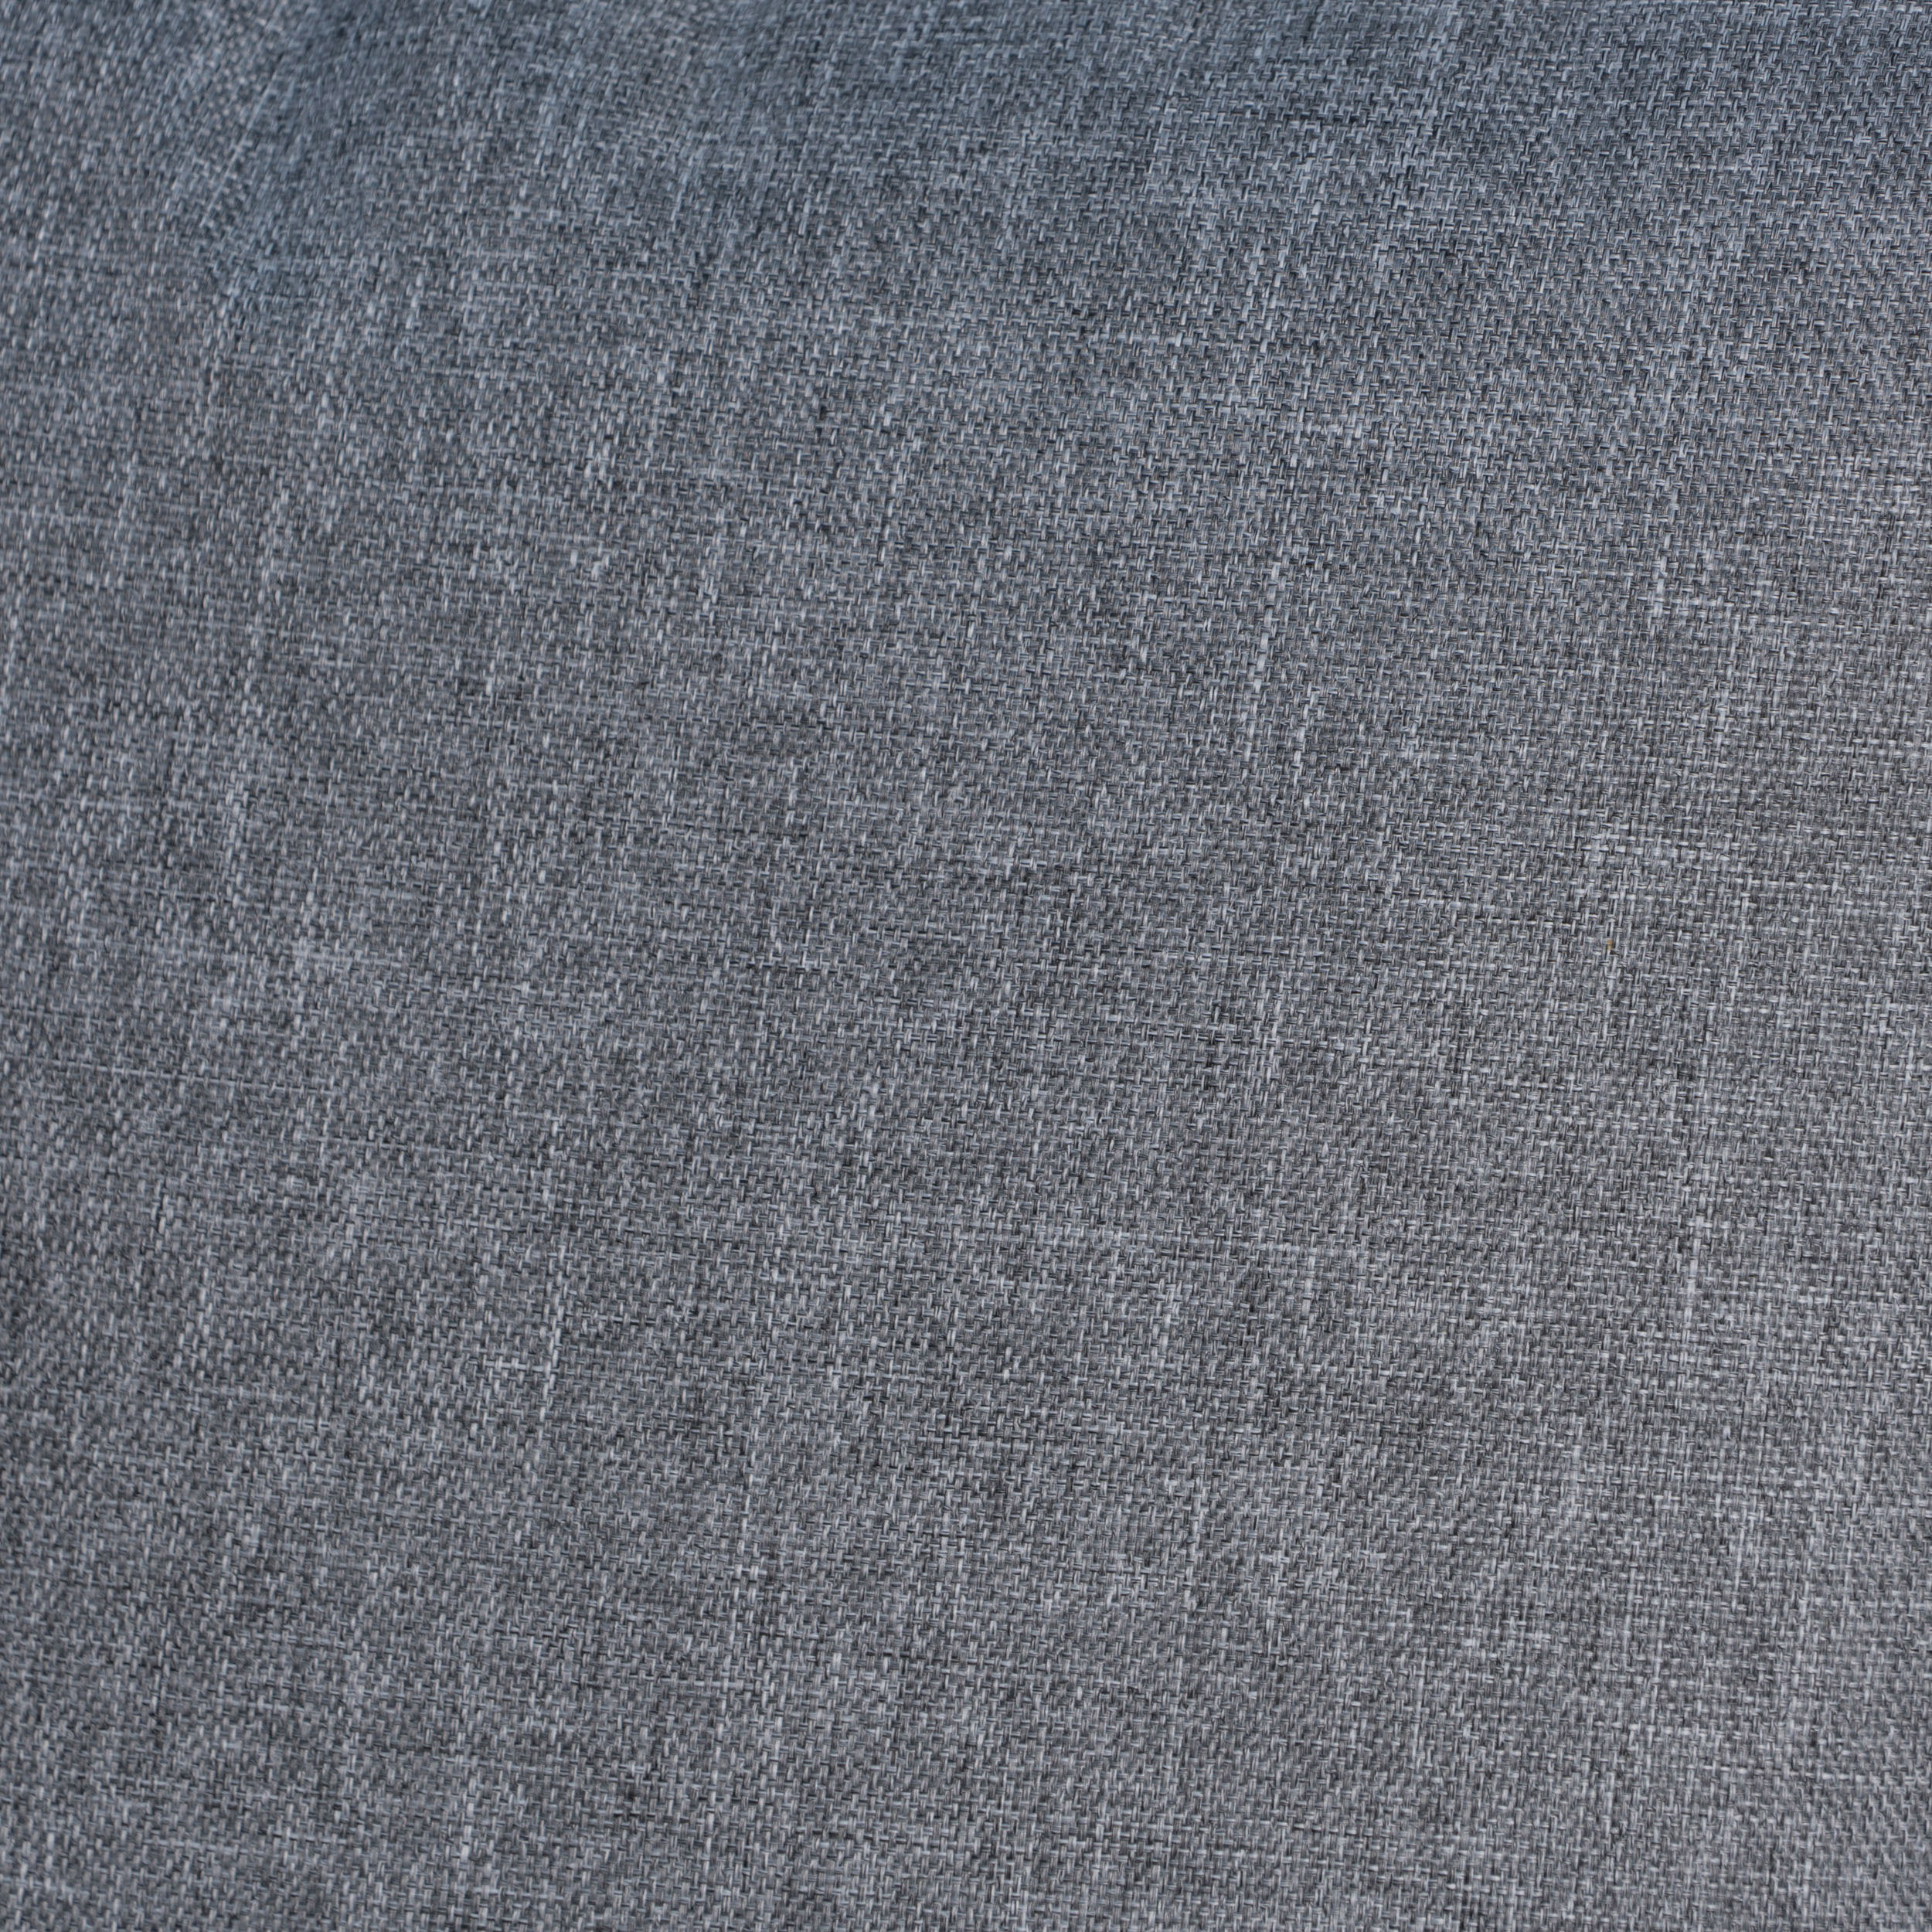 Noble House Coronado 18.5x11.5" Outdoor Fabric Throw Pillow in Gray - image 10 of 11